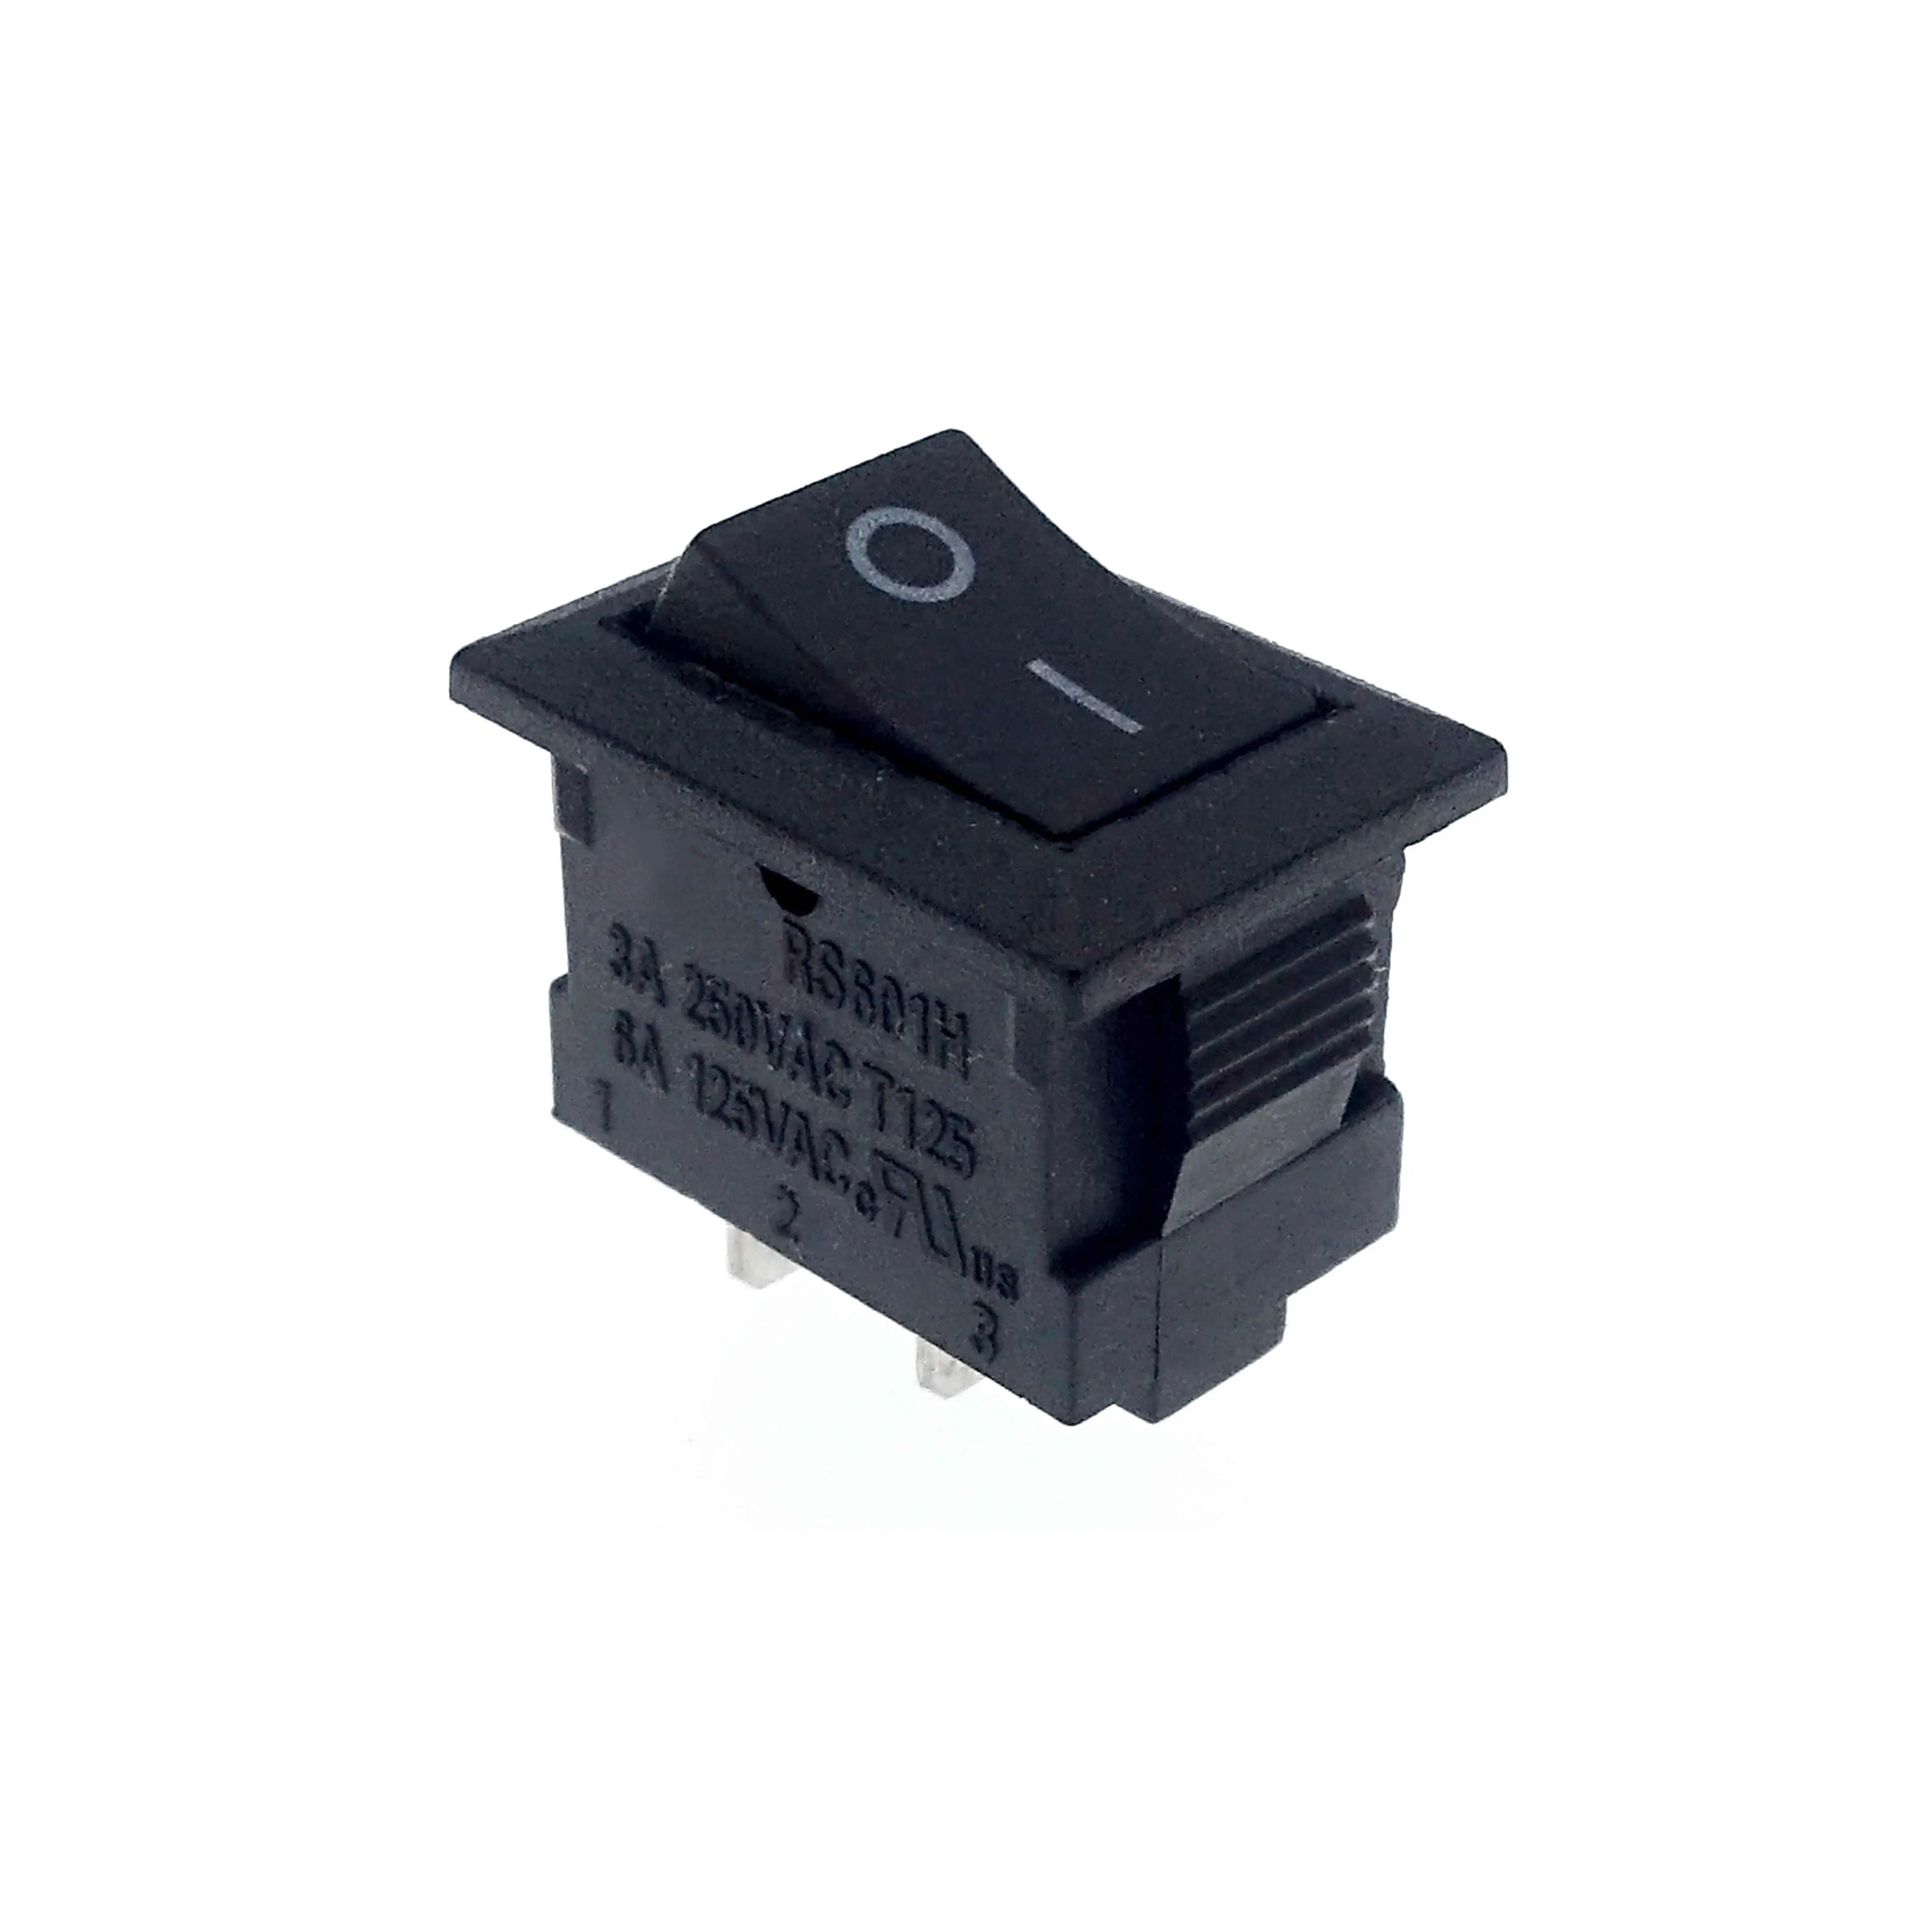 Interruptor oscilante T125/55 de alta qualidade preço barato 15X11X15MM